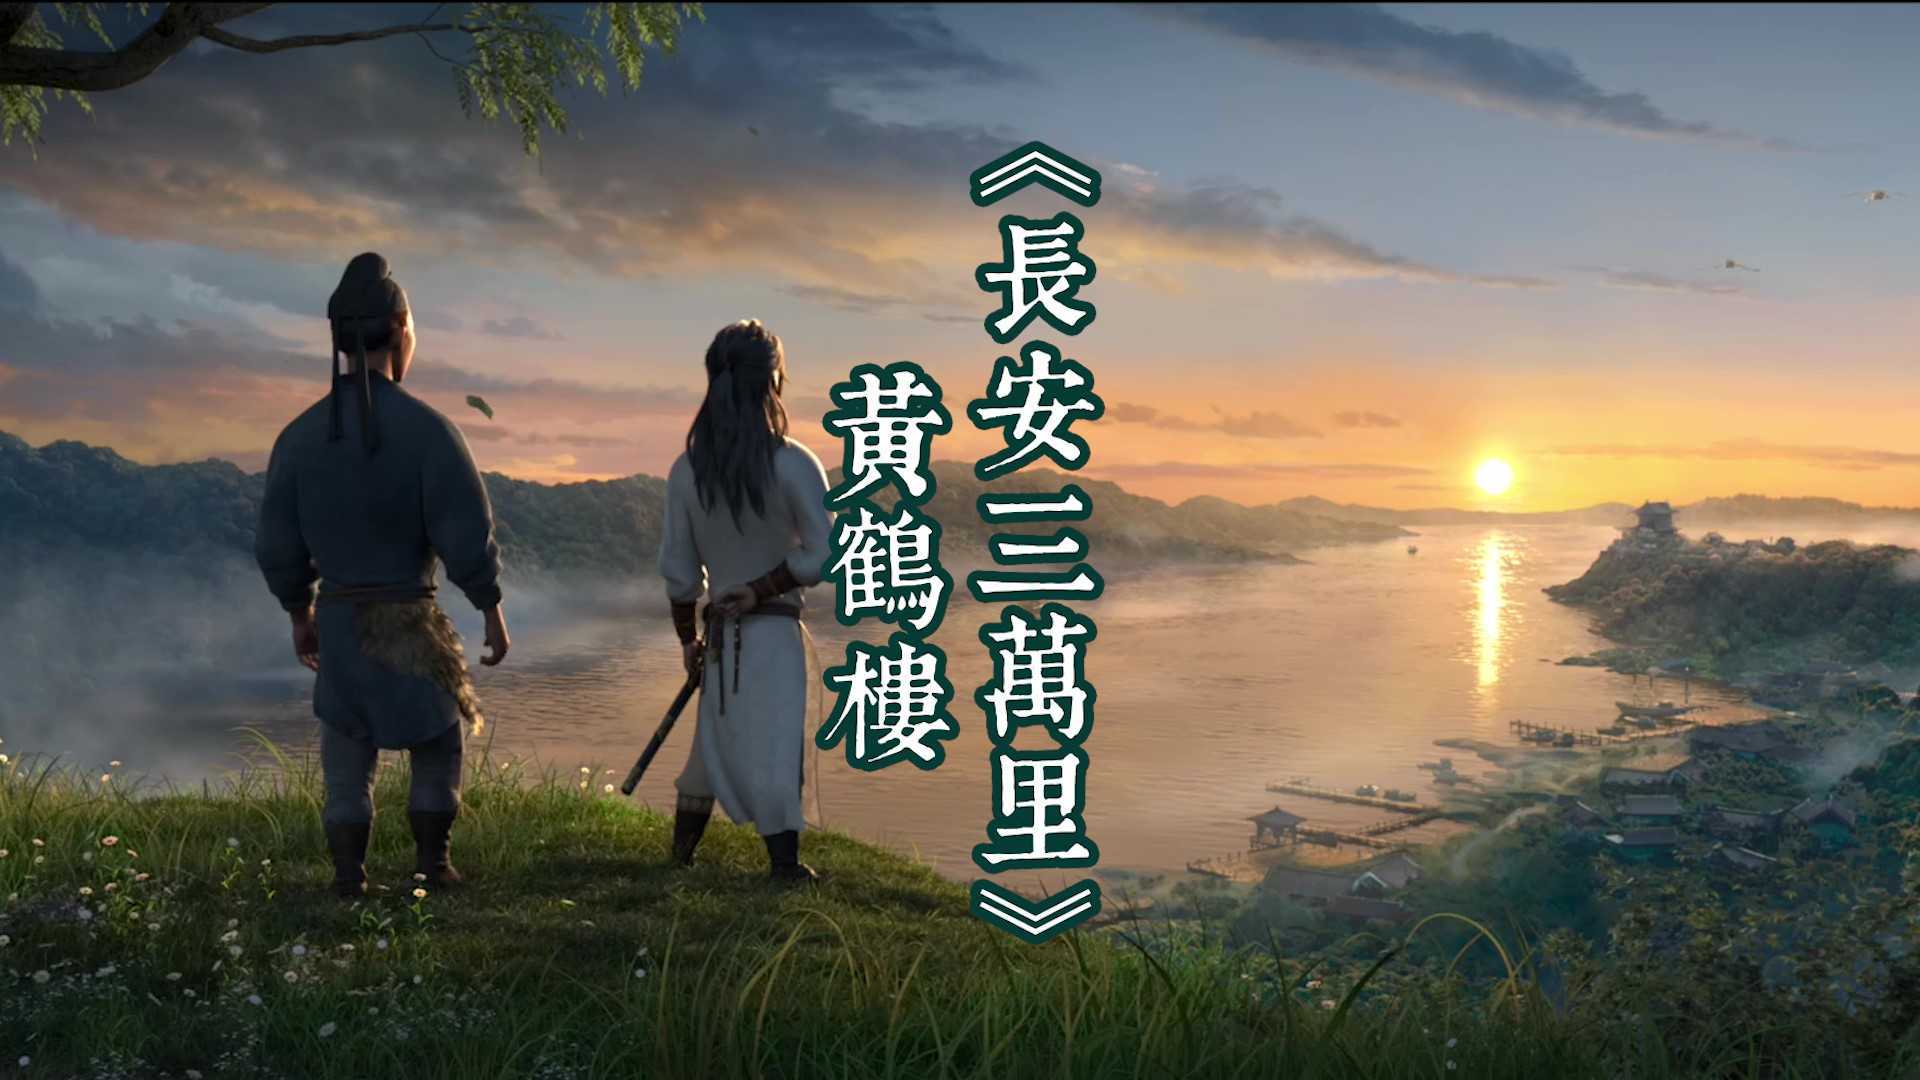 《长安三万里》为什么标注黄鹤楼所在的地方为江夏，而不是武昌？